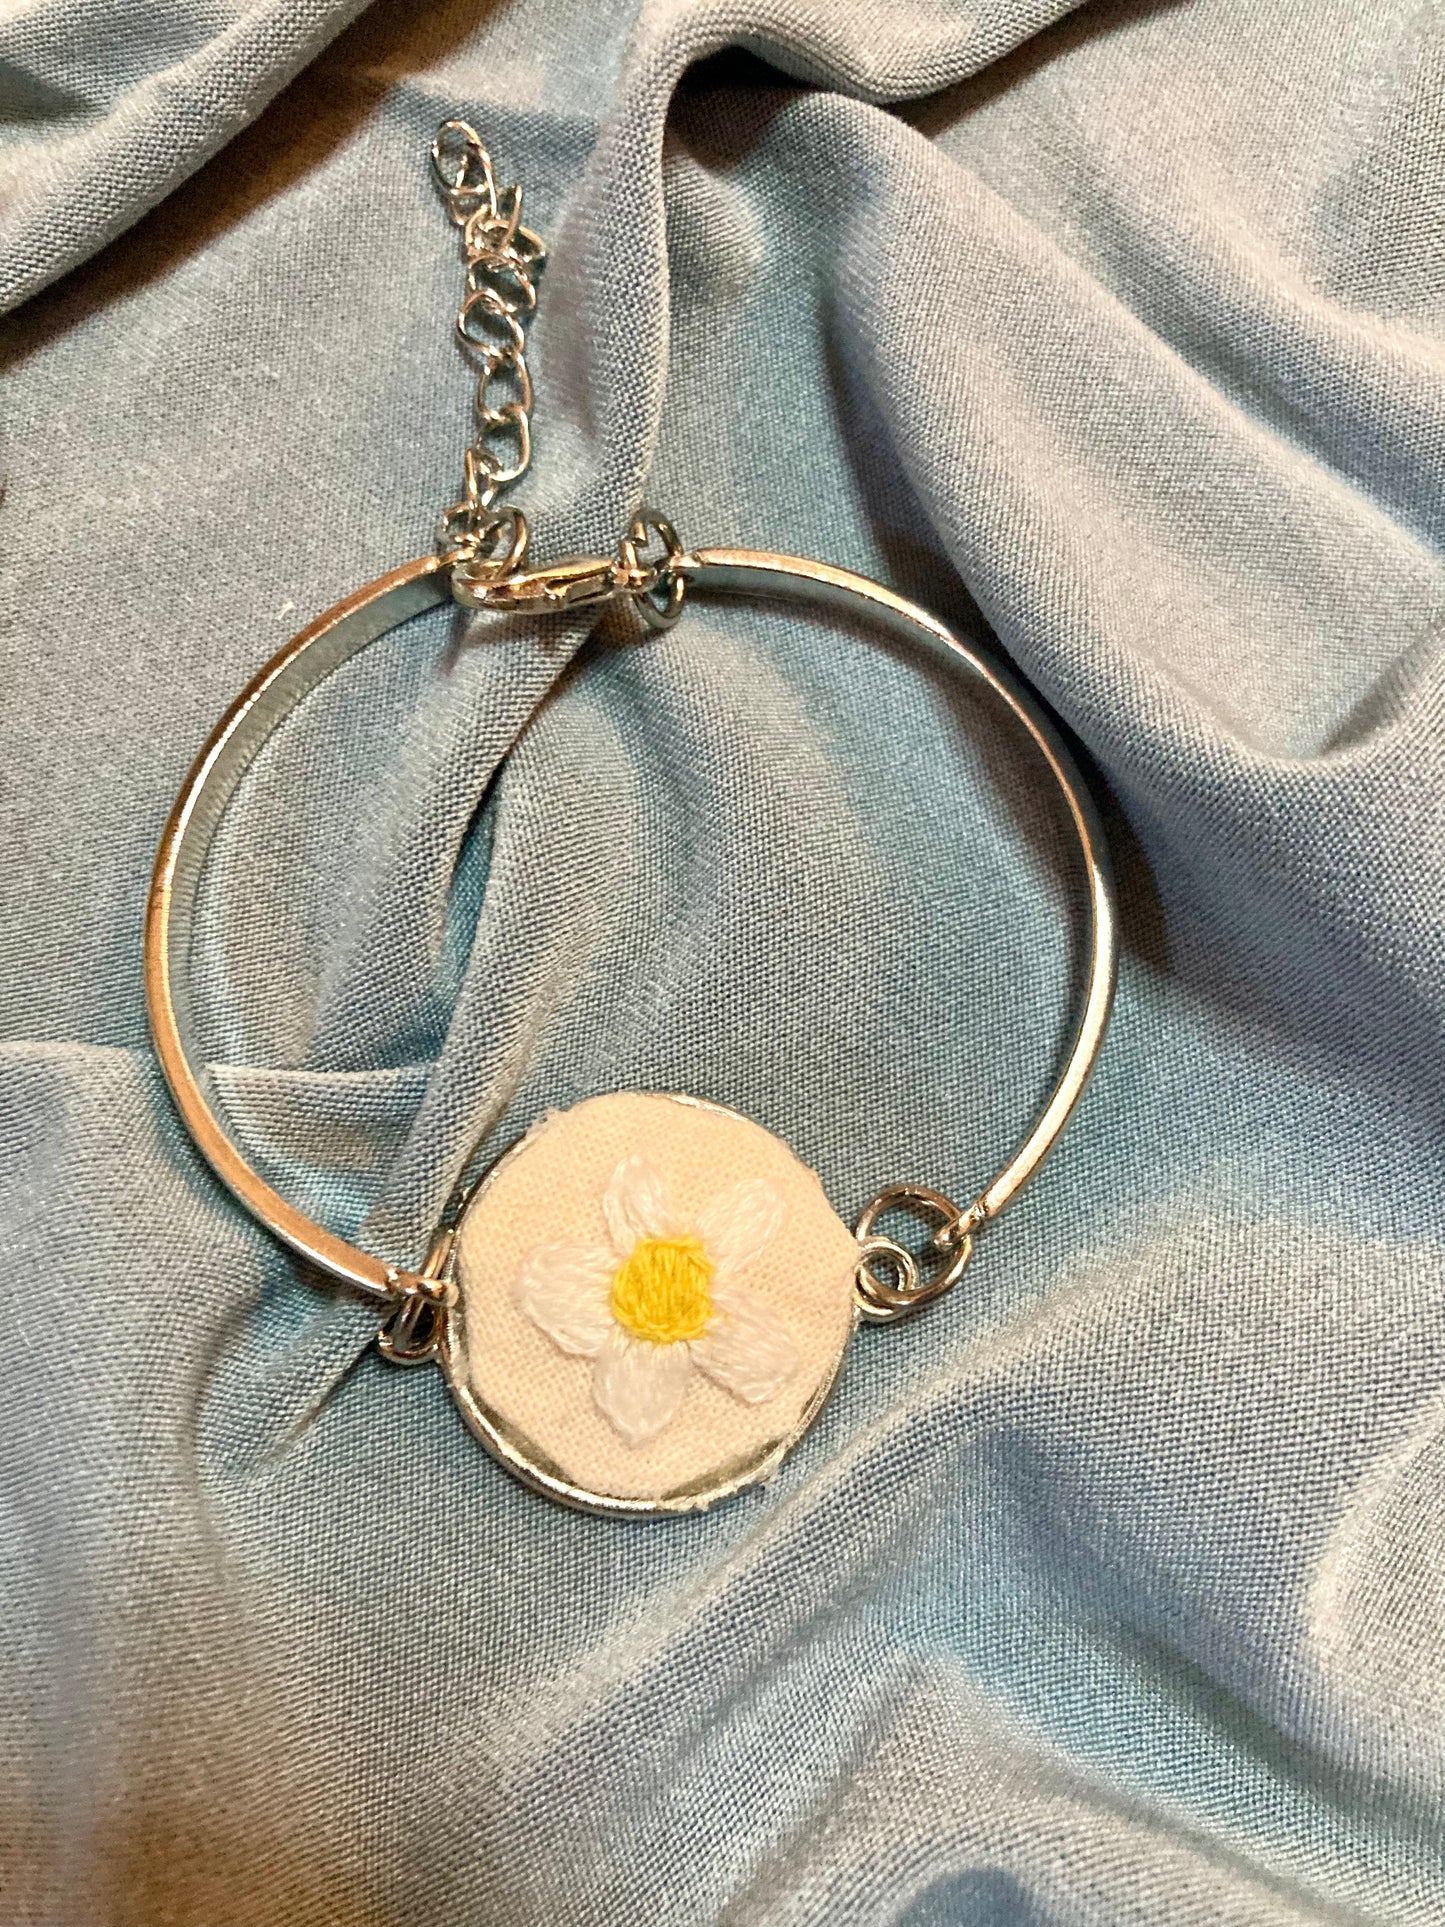 The daisy set: necklace and bracelet